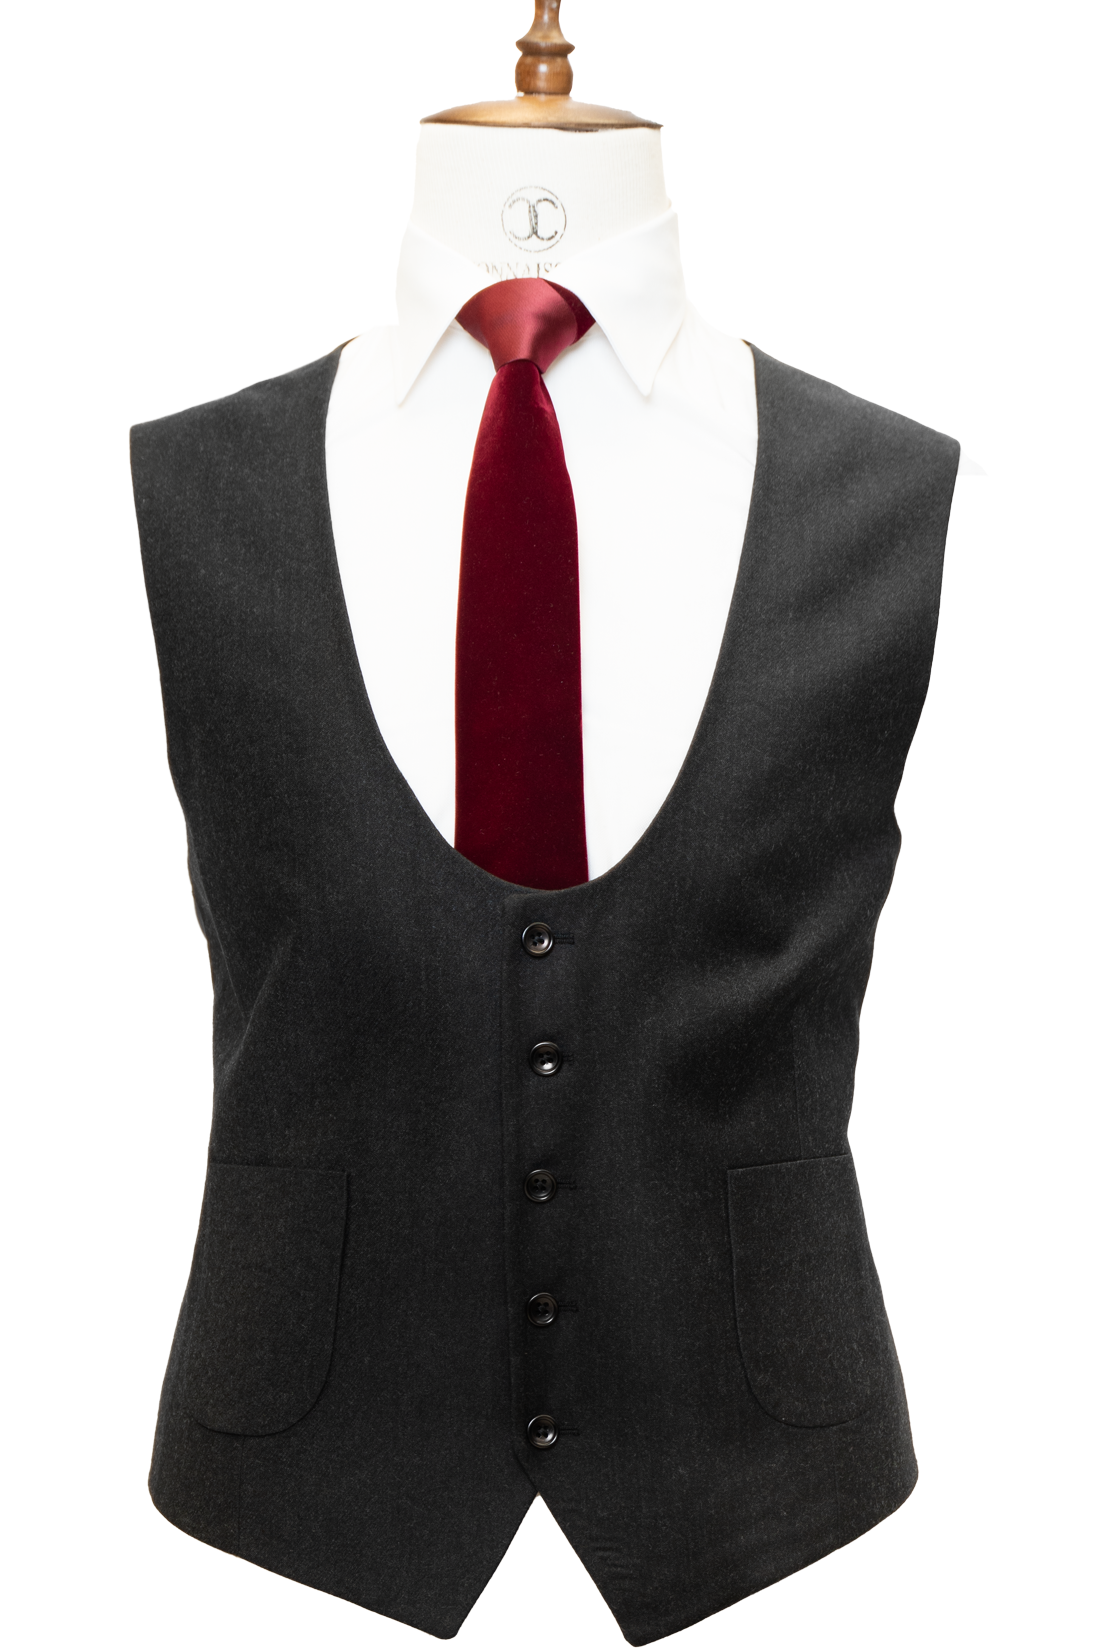 Zignone - Black Cashmere 3-Piece Fit Slim Fit Suit with Patch Pockets